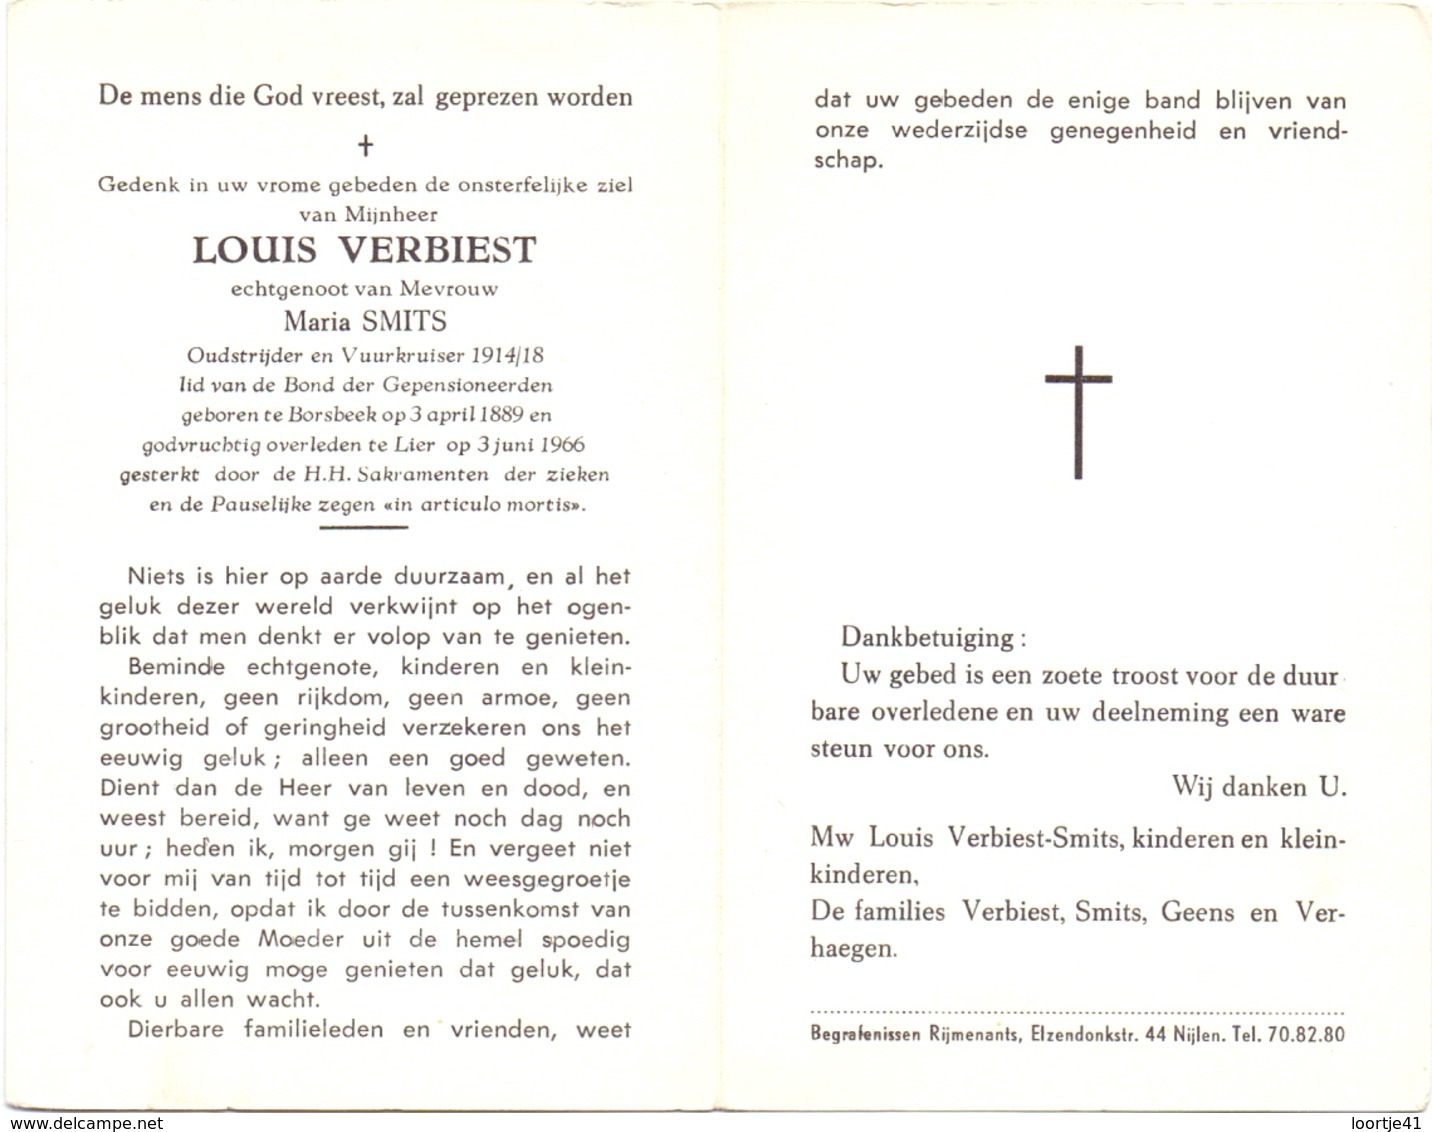 Devotie - Doodsprentje Overlijden - Oudstrijder - Louis Verbiest - Borsbeek 1889 - Lier 1966 - Overlijden